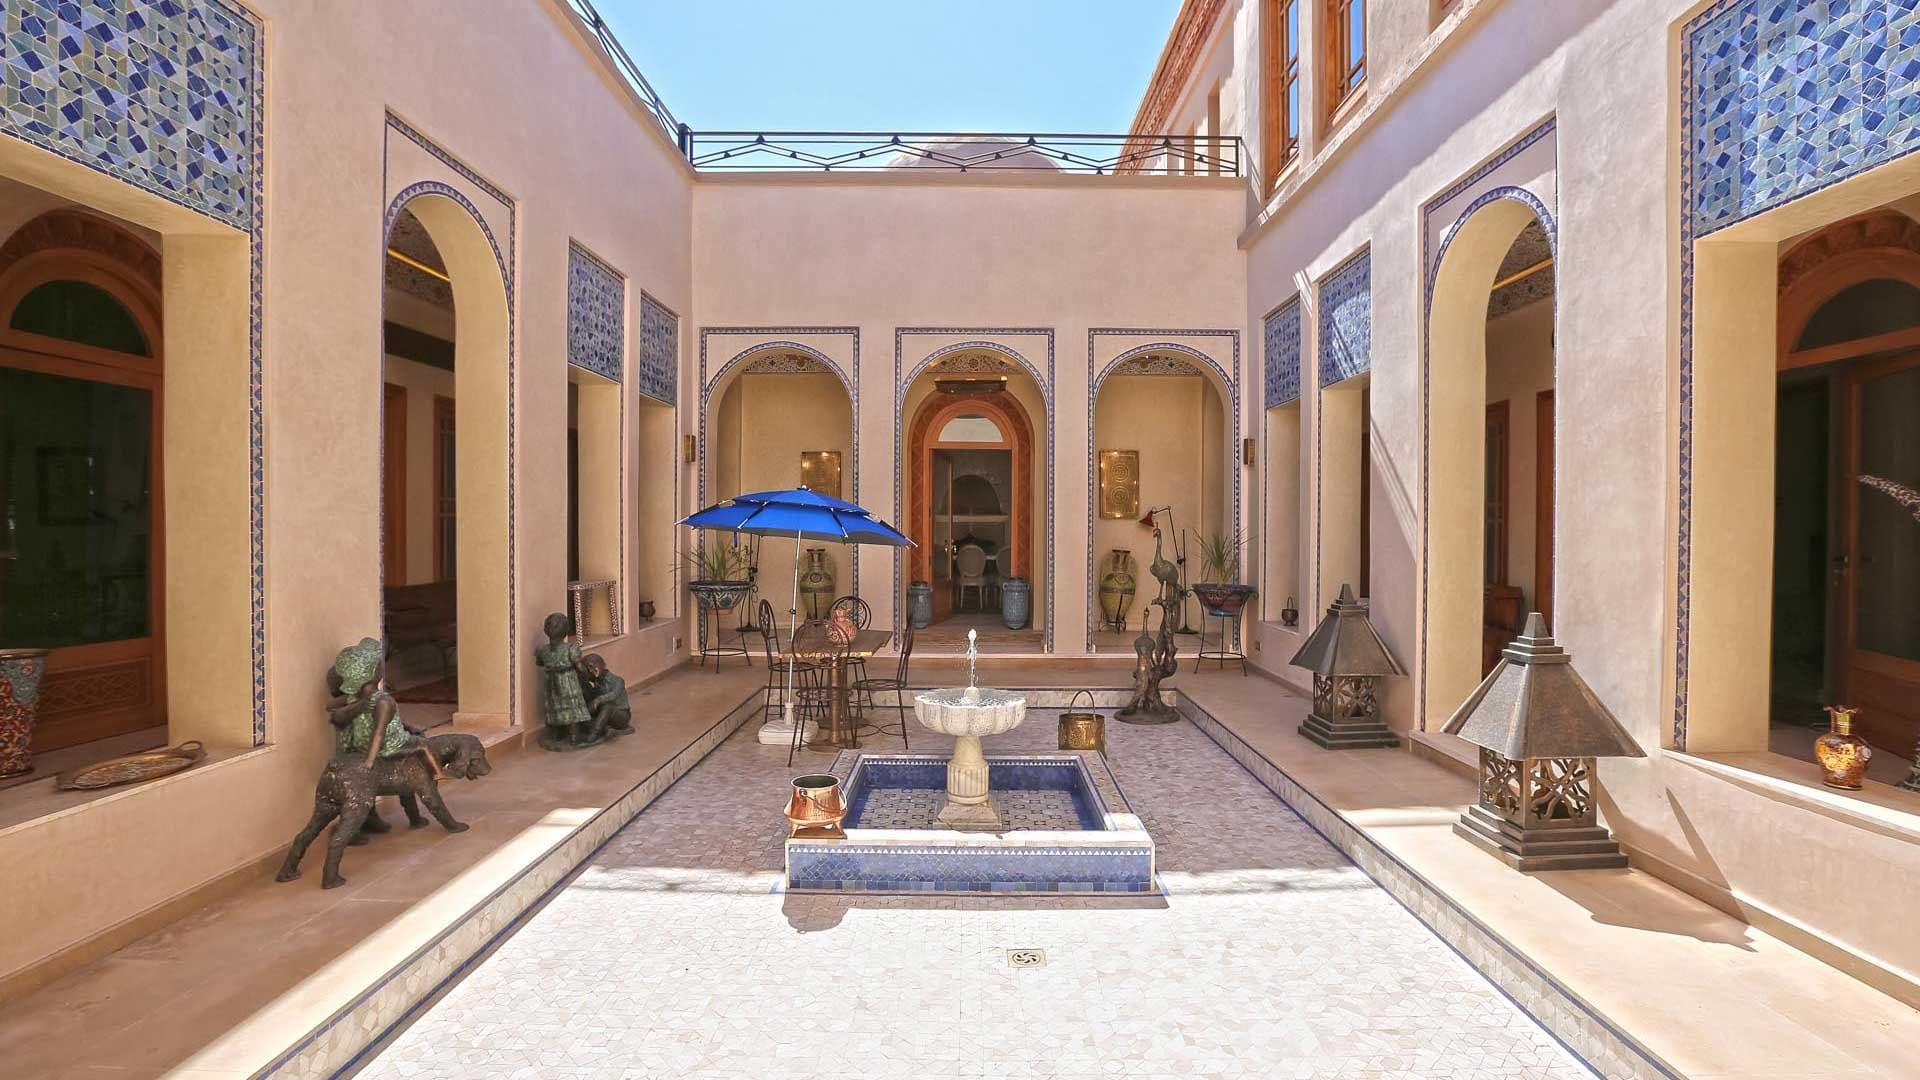 8 Bedroom Villa For Sale Marrakech Lp08726 1aeeee6ce708f200.jpg